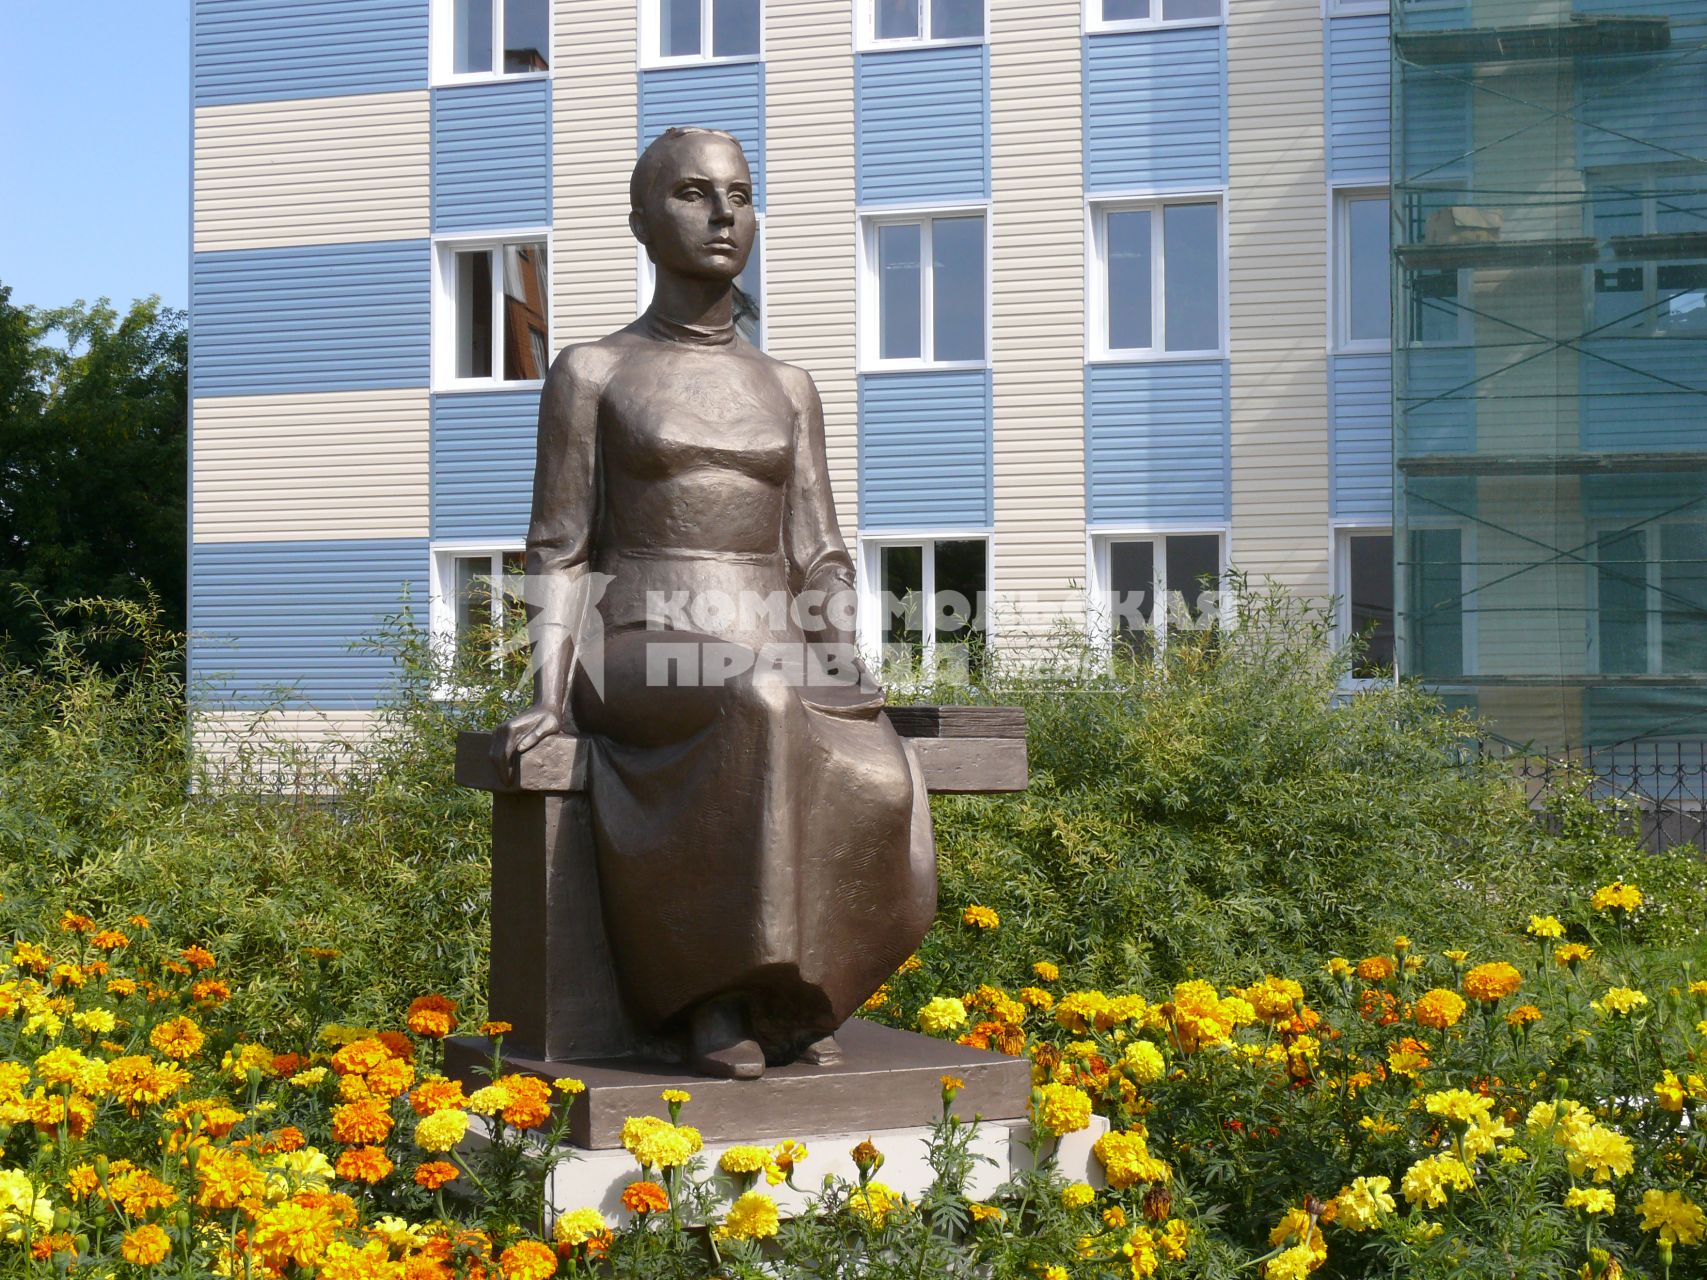 Памятник \"Российскому учителю\" перед одним из зданий Орловского государственного университета (бывшего Педагогического института). Открыт 3 октября 2005 г.